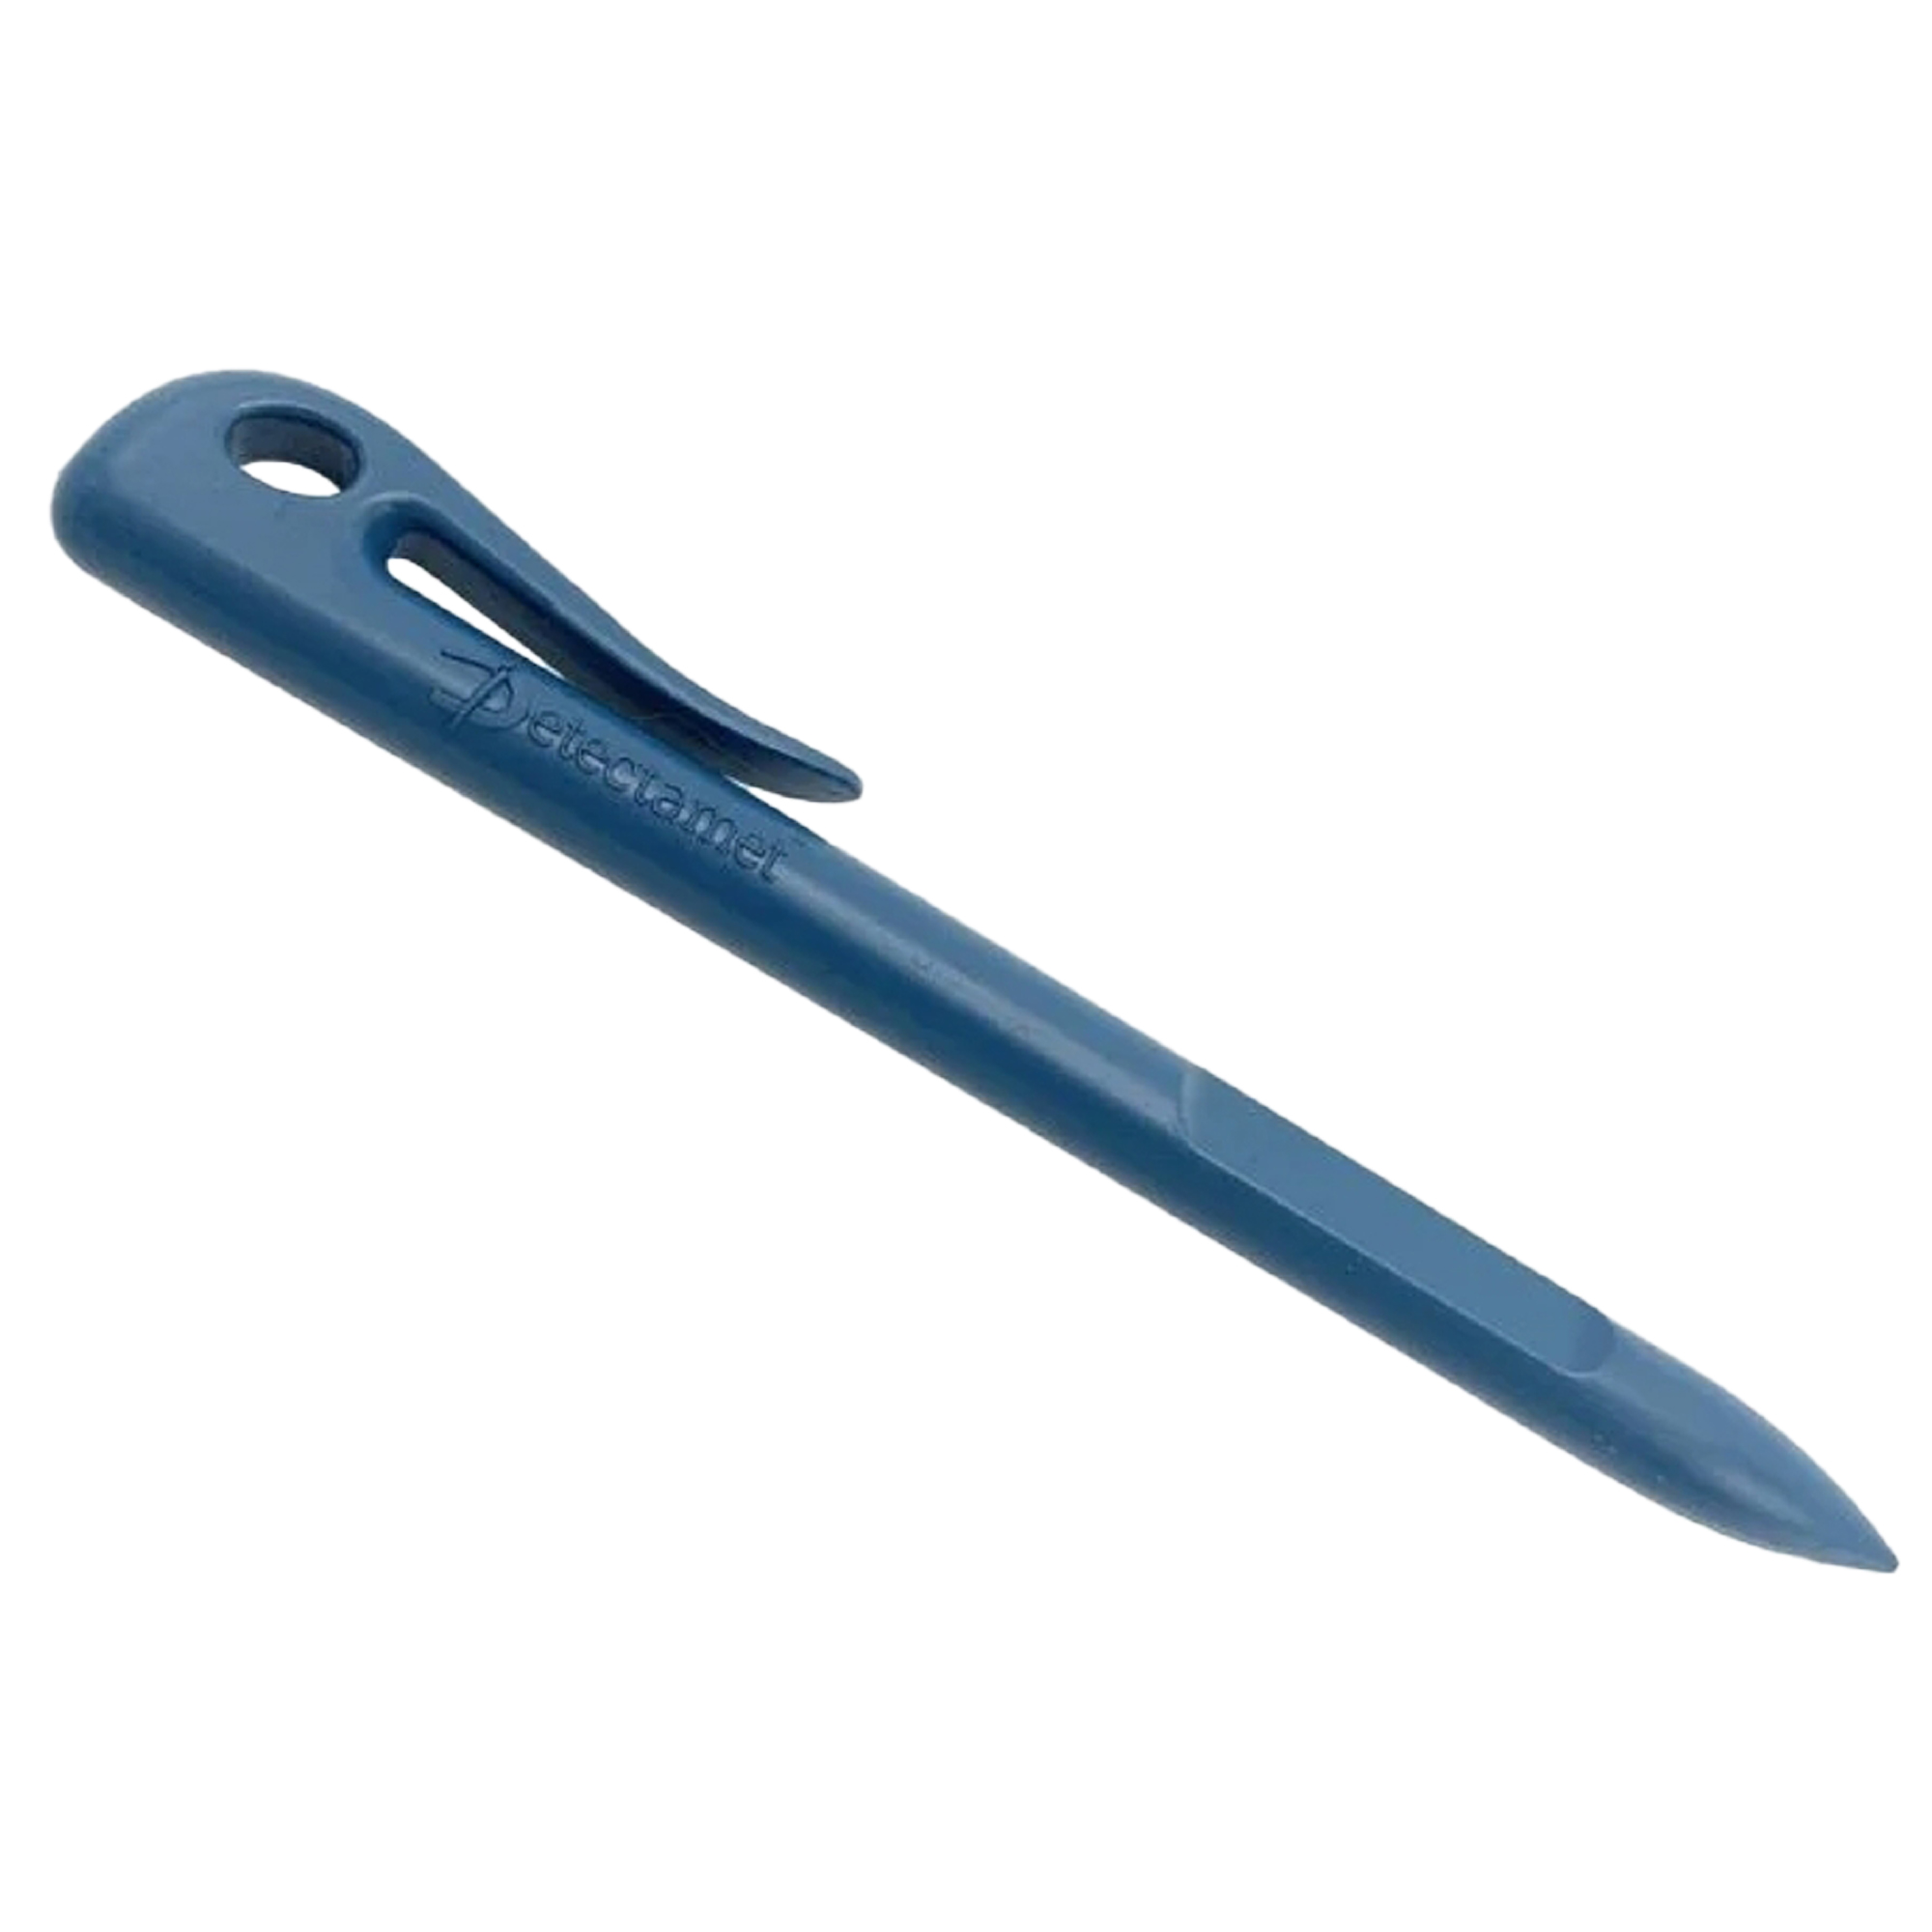 Penna detectabile monoblocco - per touch screen - blu - Linea Flesh